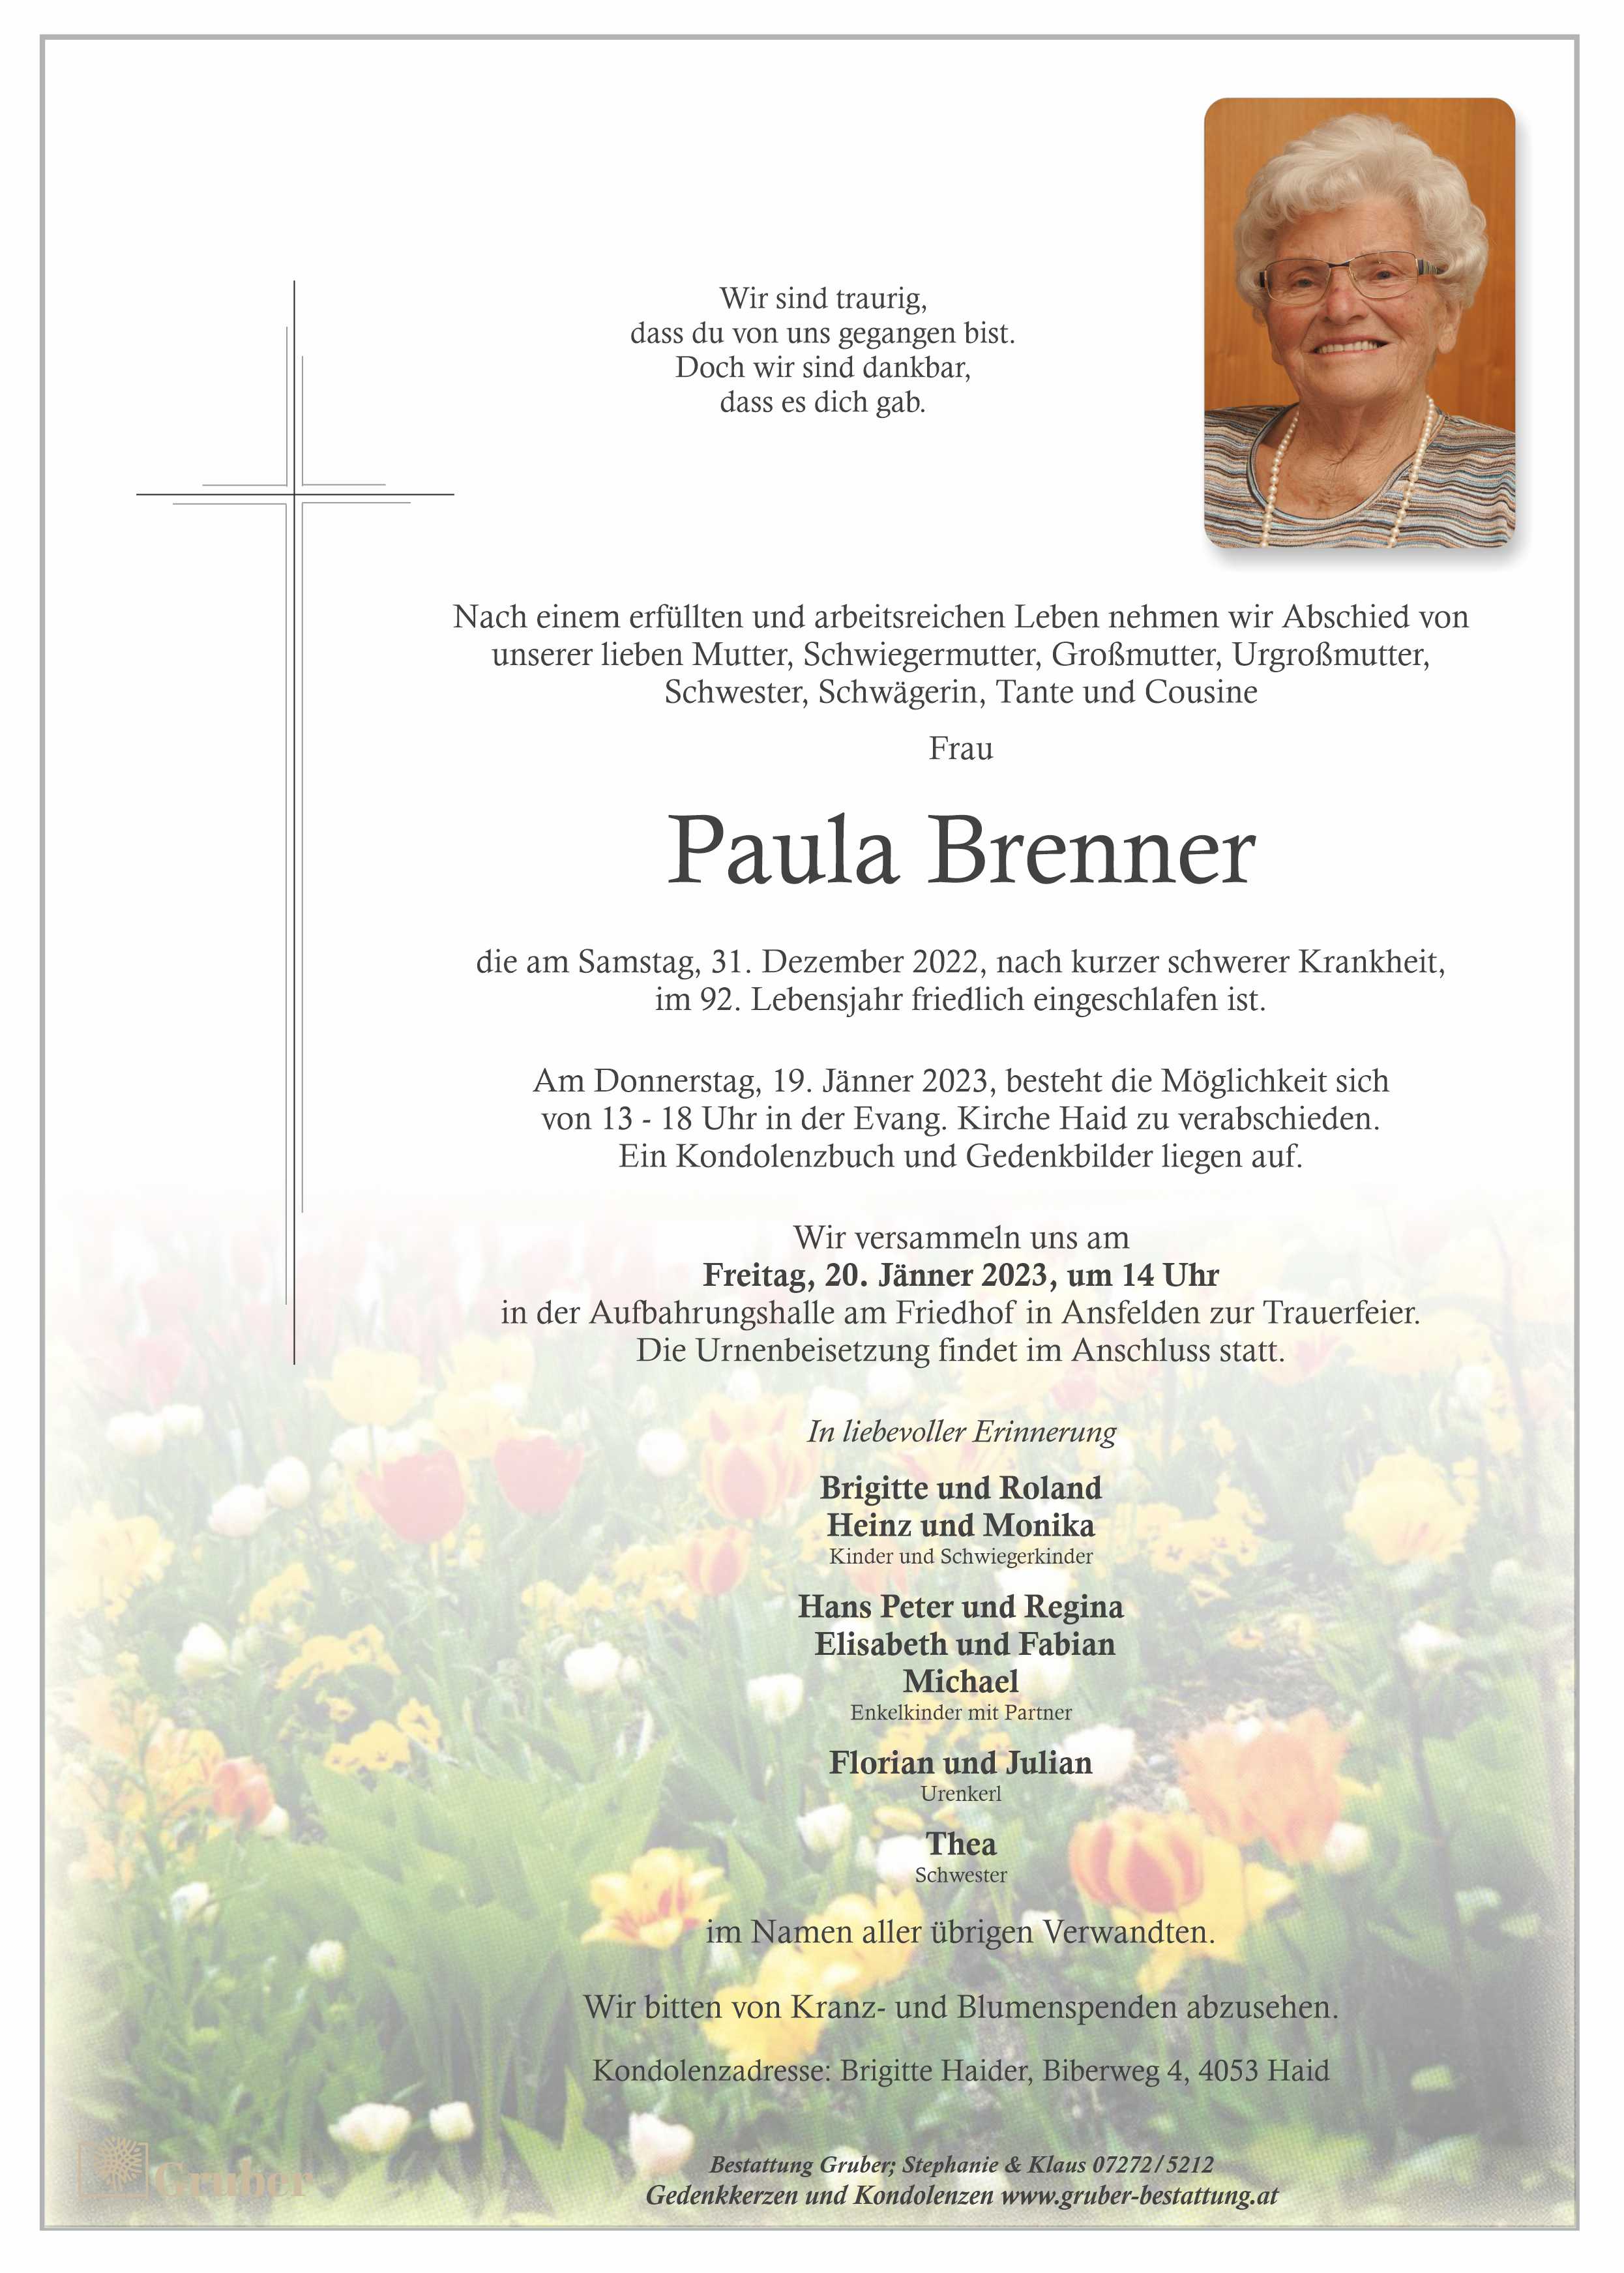 Paula Brenner (Haid)